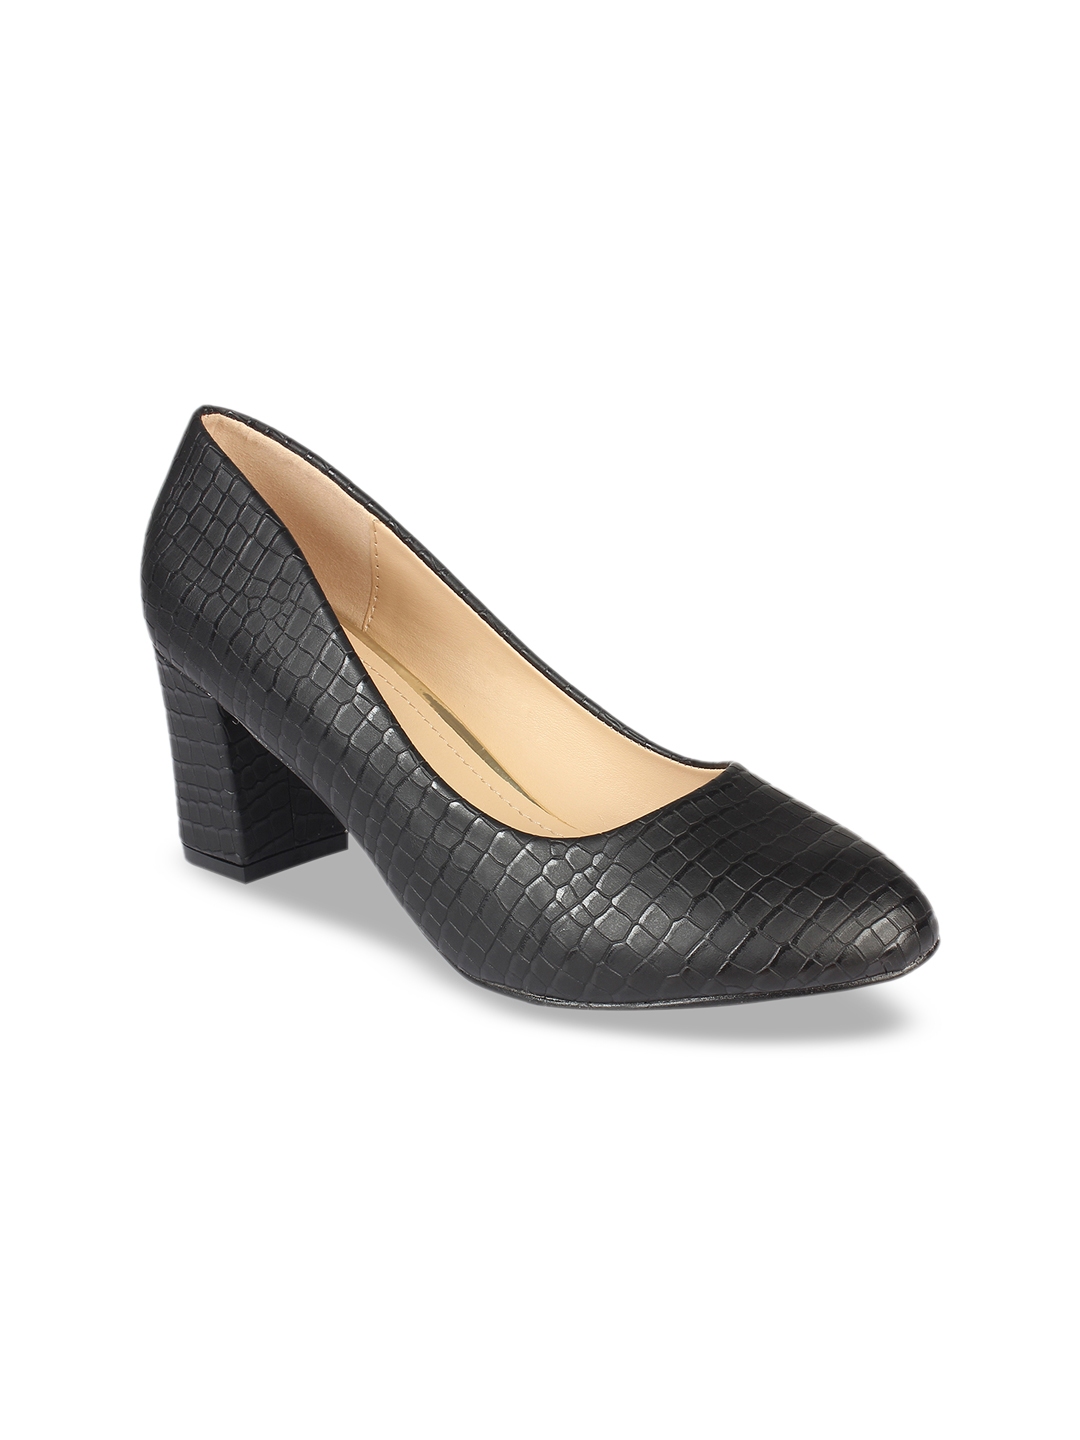 Buy Flat N Heels Women Black Textured Pumps - Heels for Women 11078940 ...